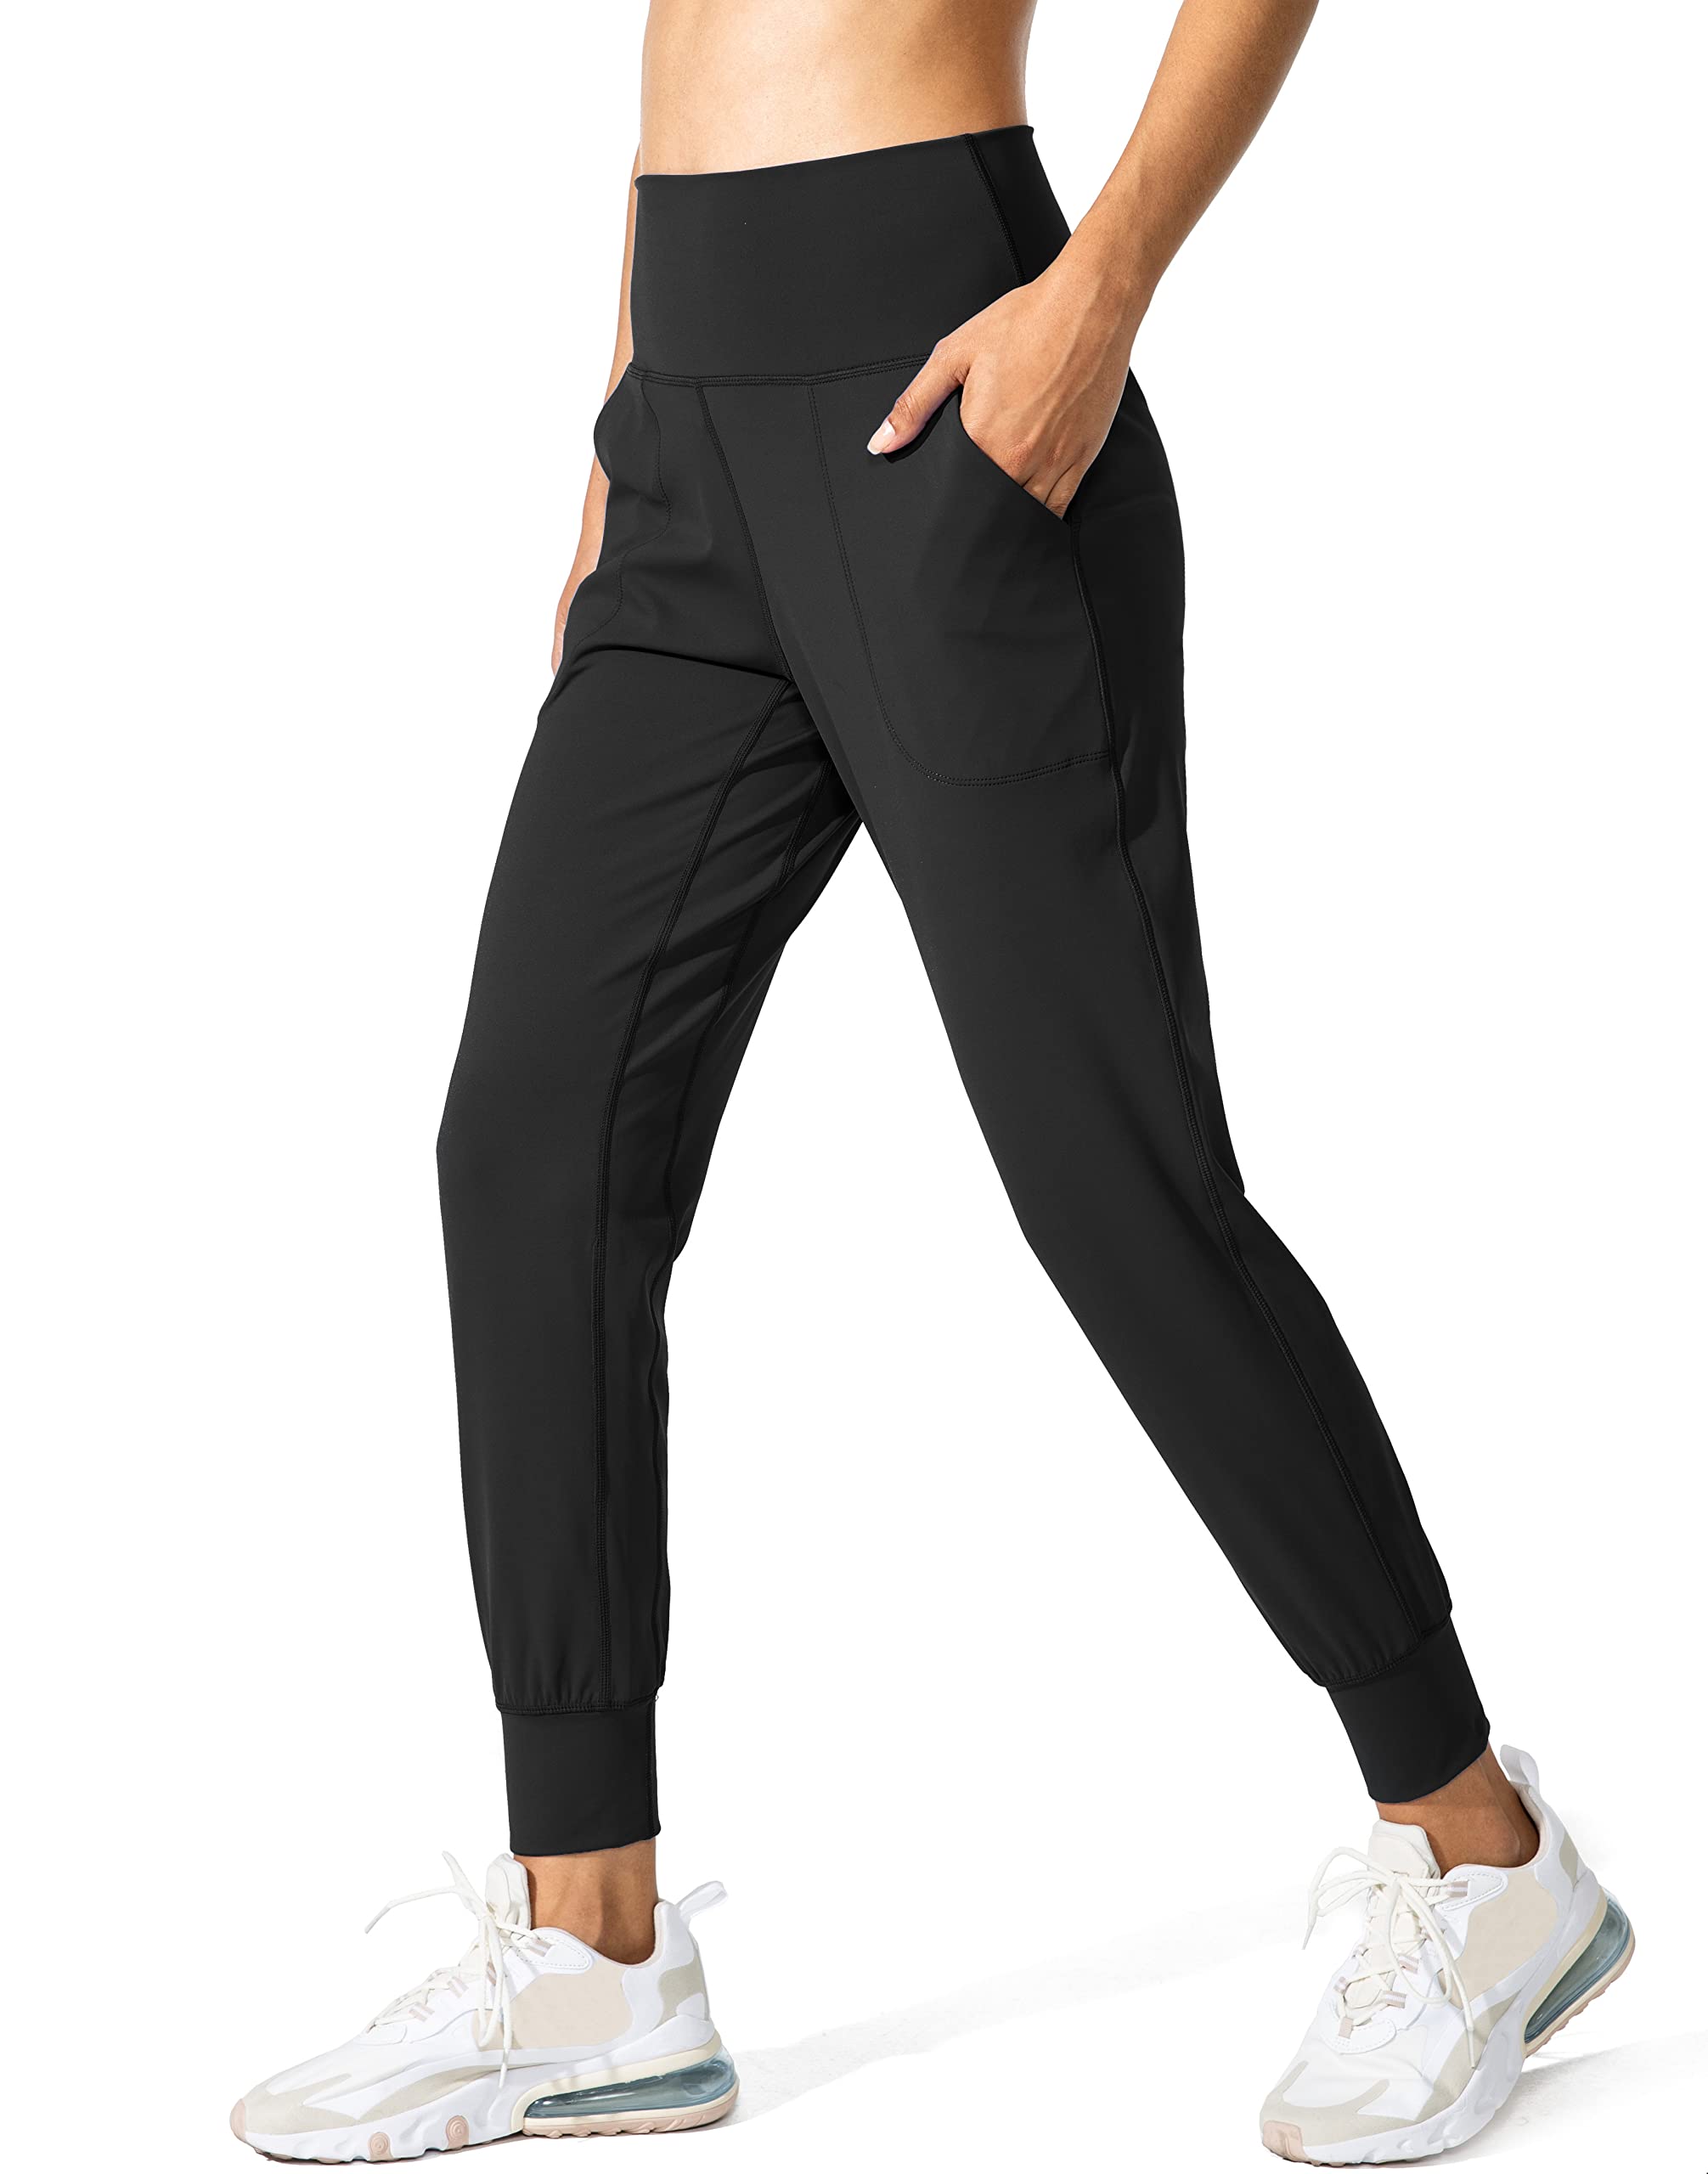 Highly Stretchy Elastic Waistband Pocket Yoga Leggings